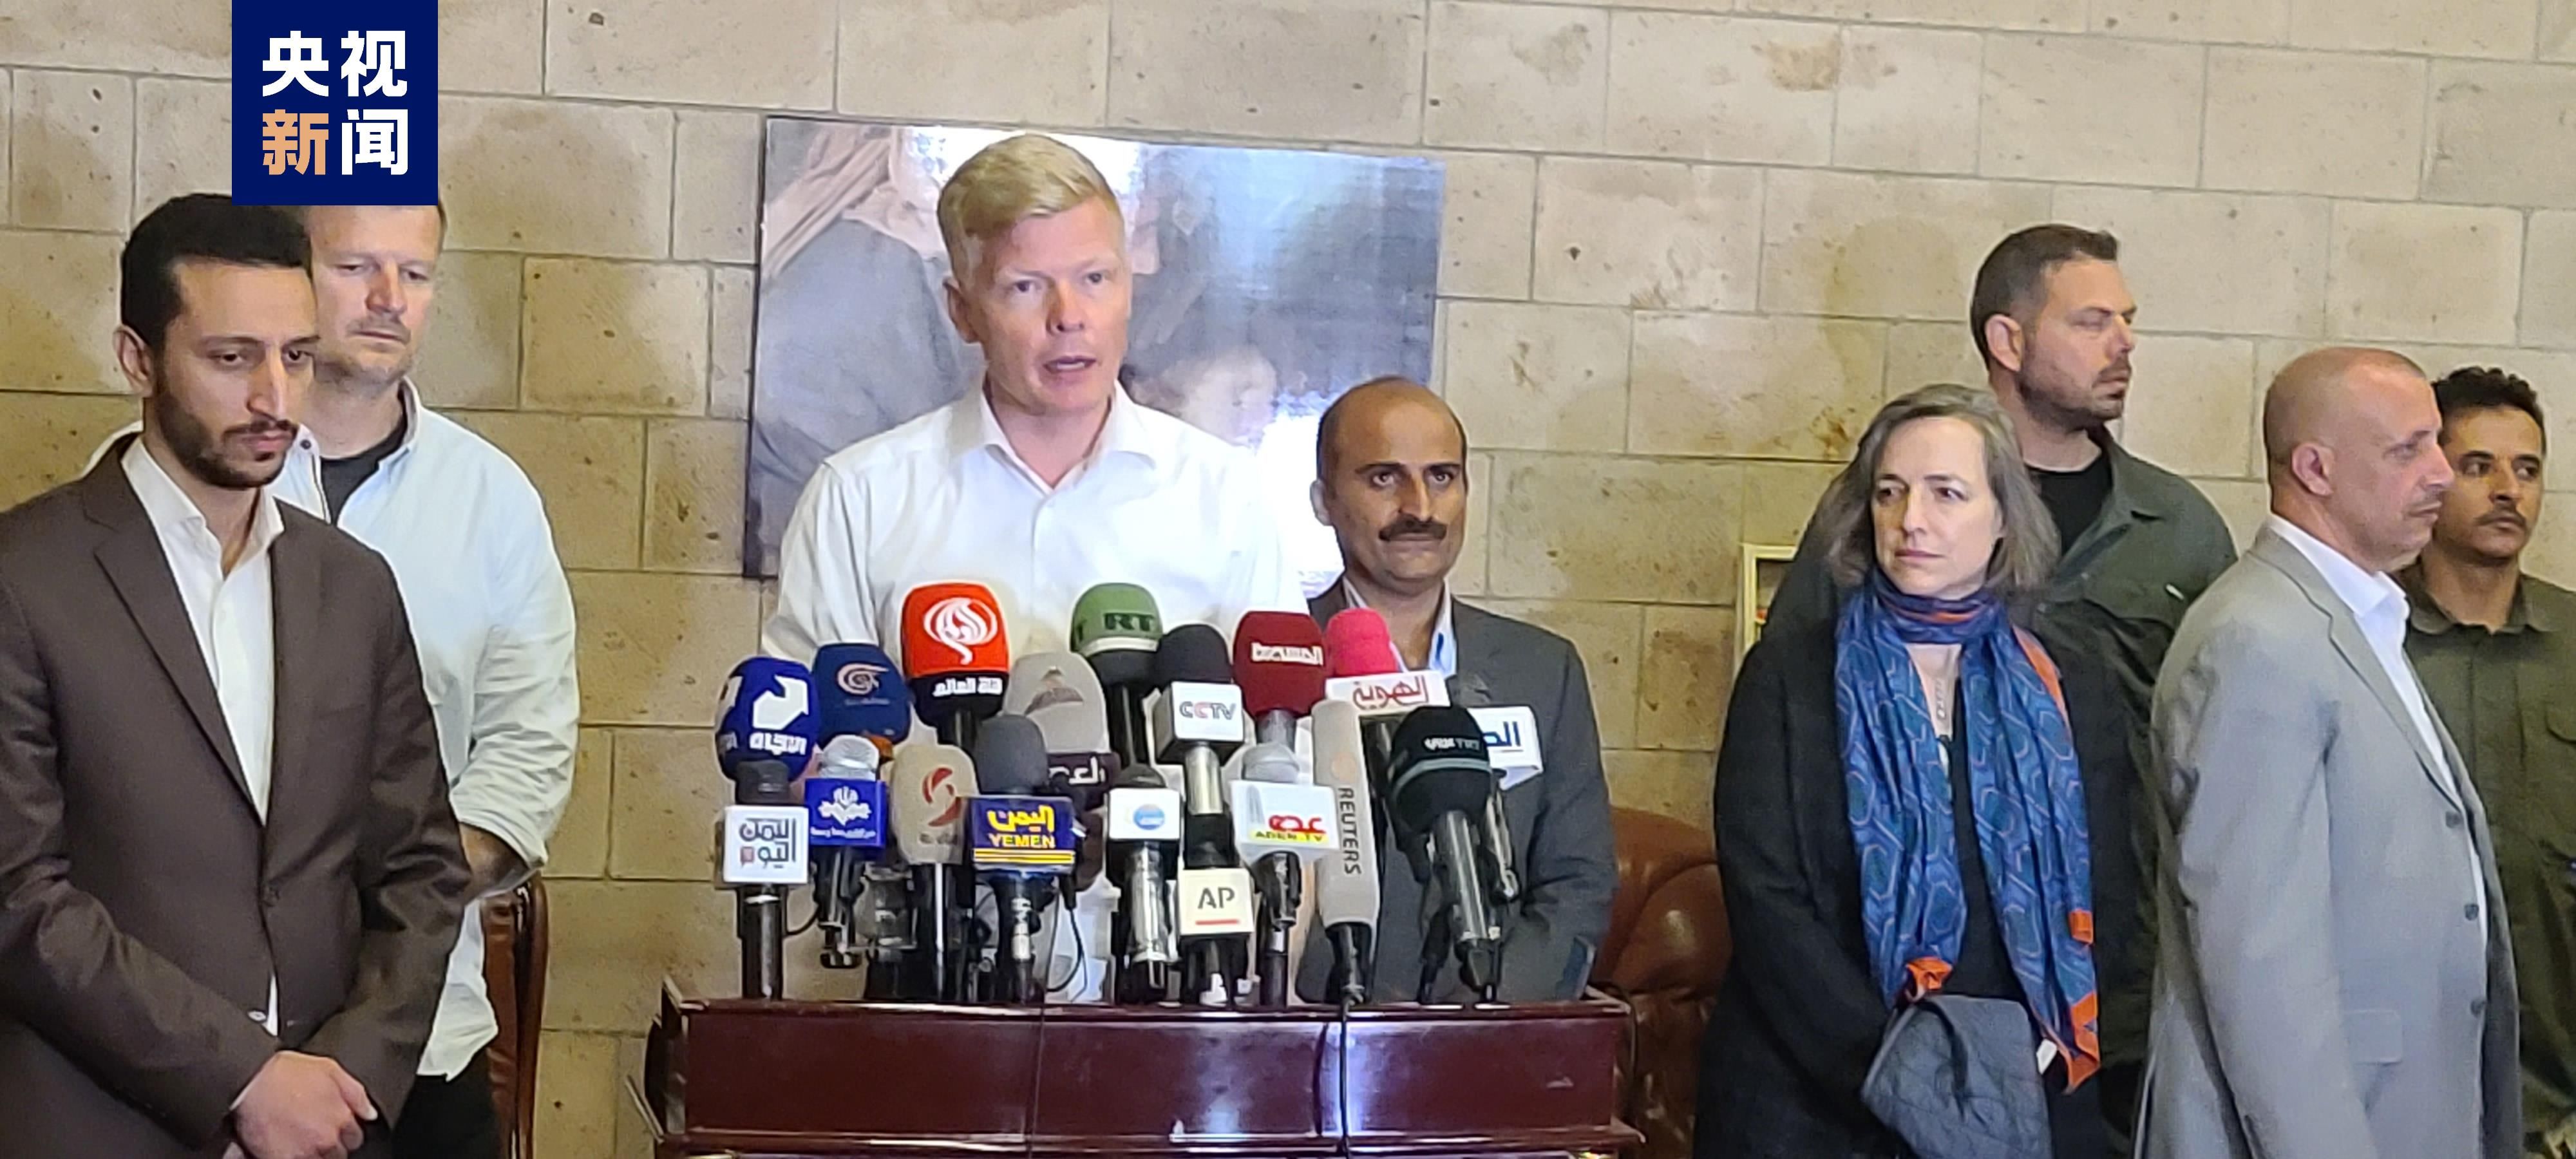 联合国秘书长也门问题特使离开萨那前往临时首都亚丁